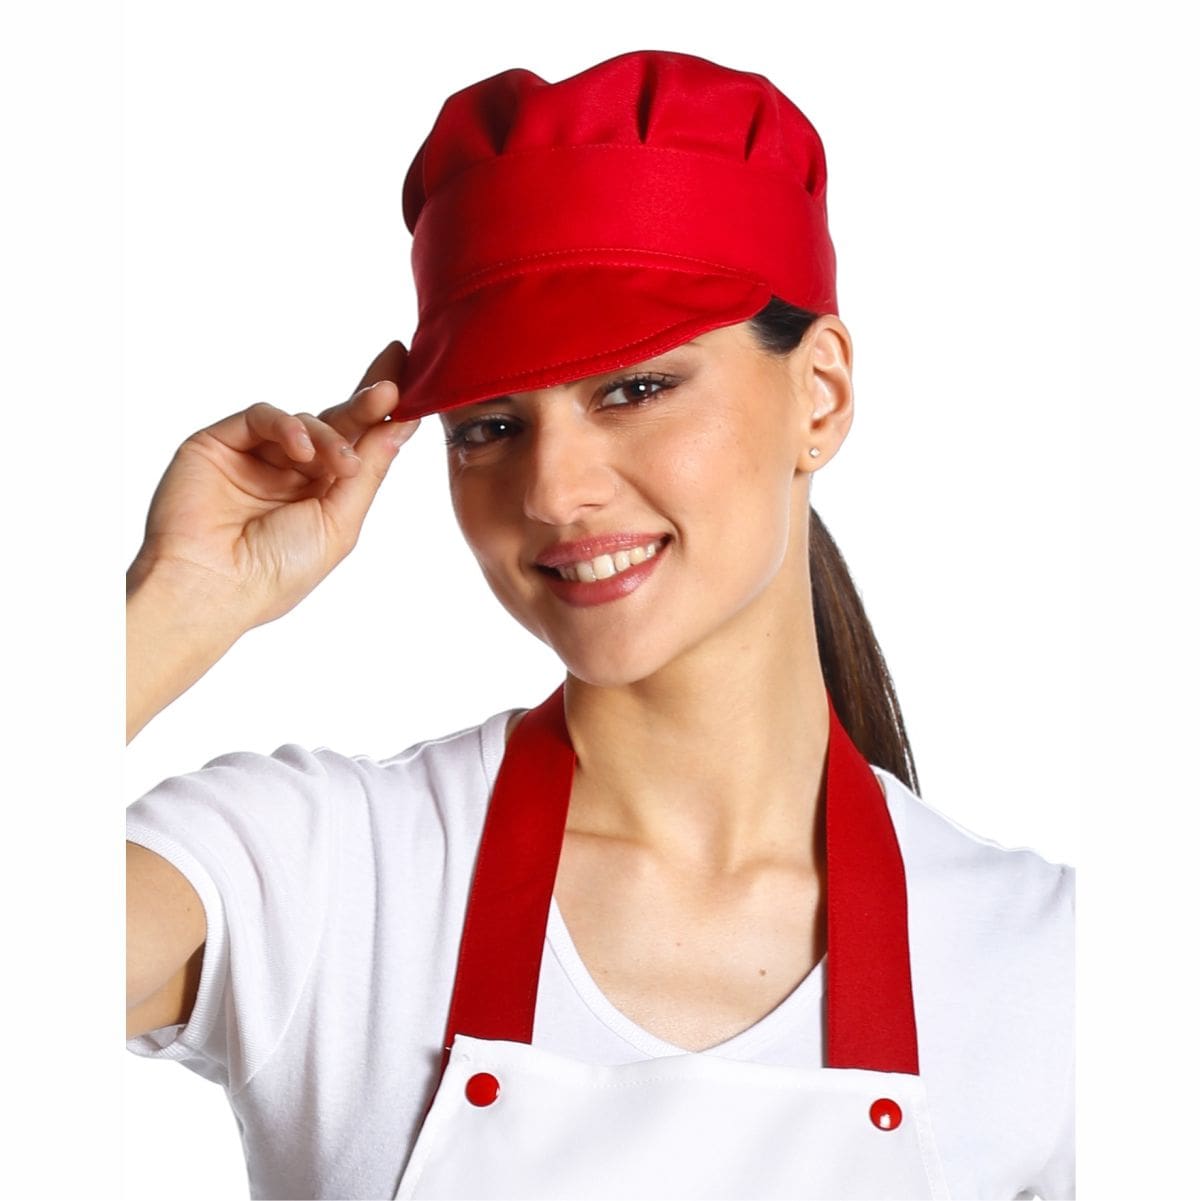 Cappello da Chef elasticizzato sul retro. Lavabile a 40°C. Made in